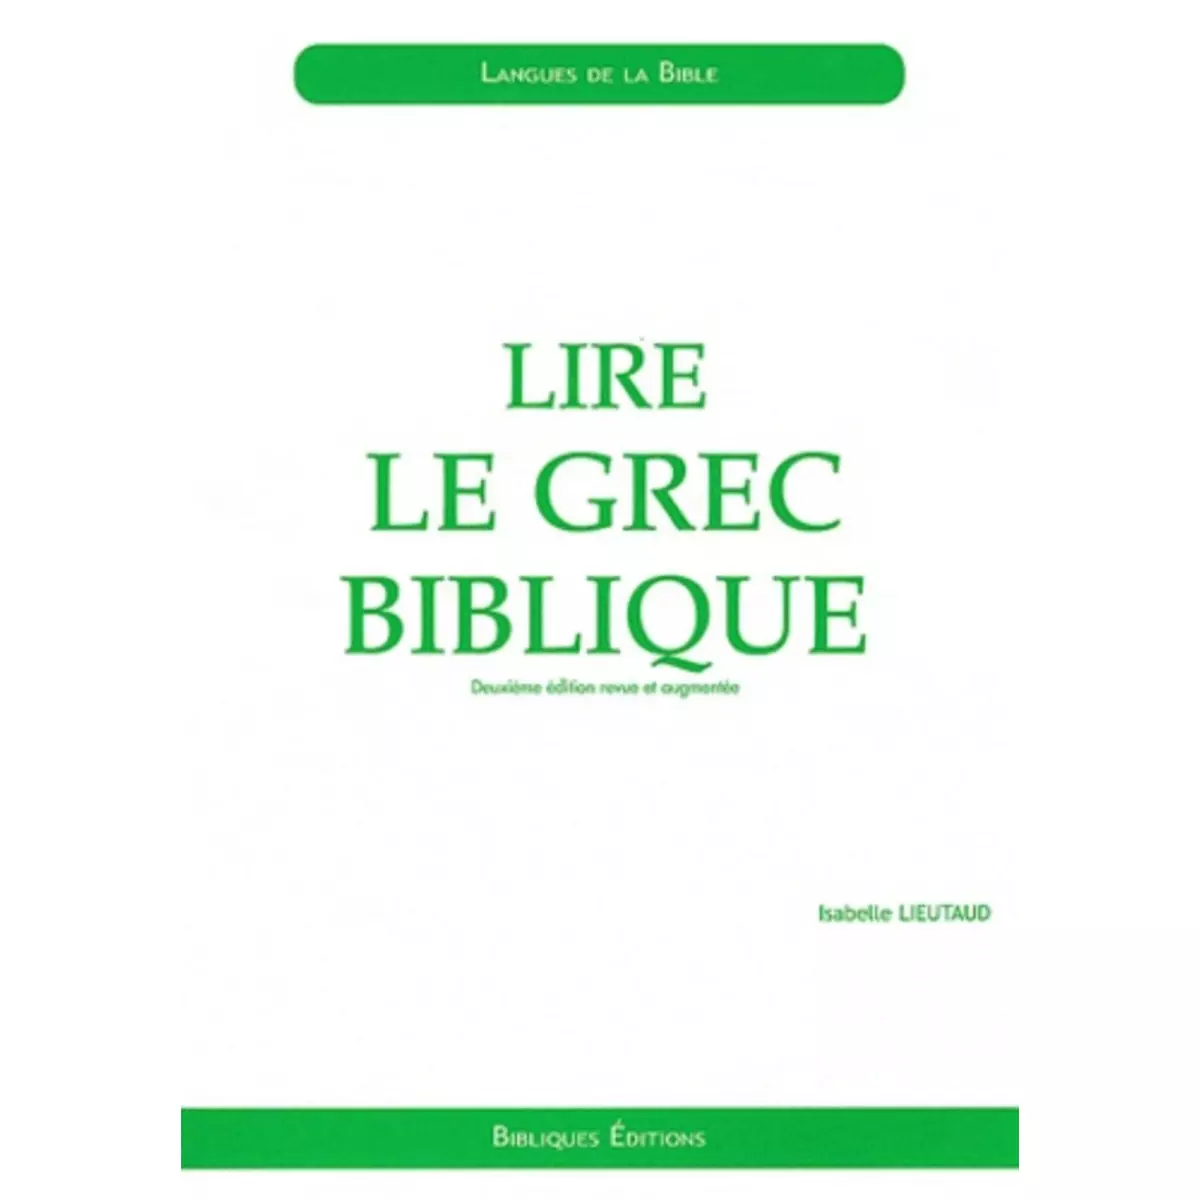  LIRE LE GREC BIBLIQUE. INITIATION, 2E EDITION REVUE ET AUGMENTEE, Lieutaud Isabelle